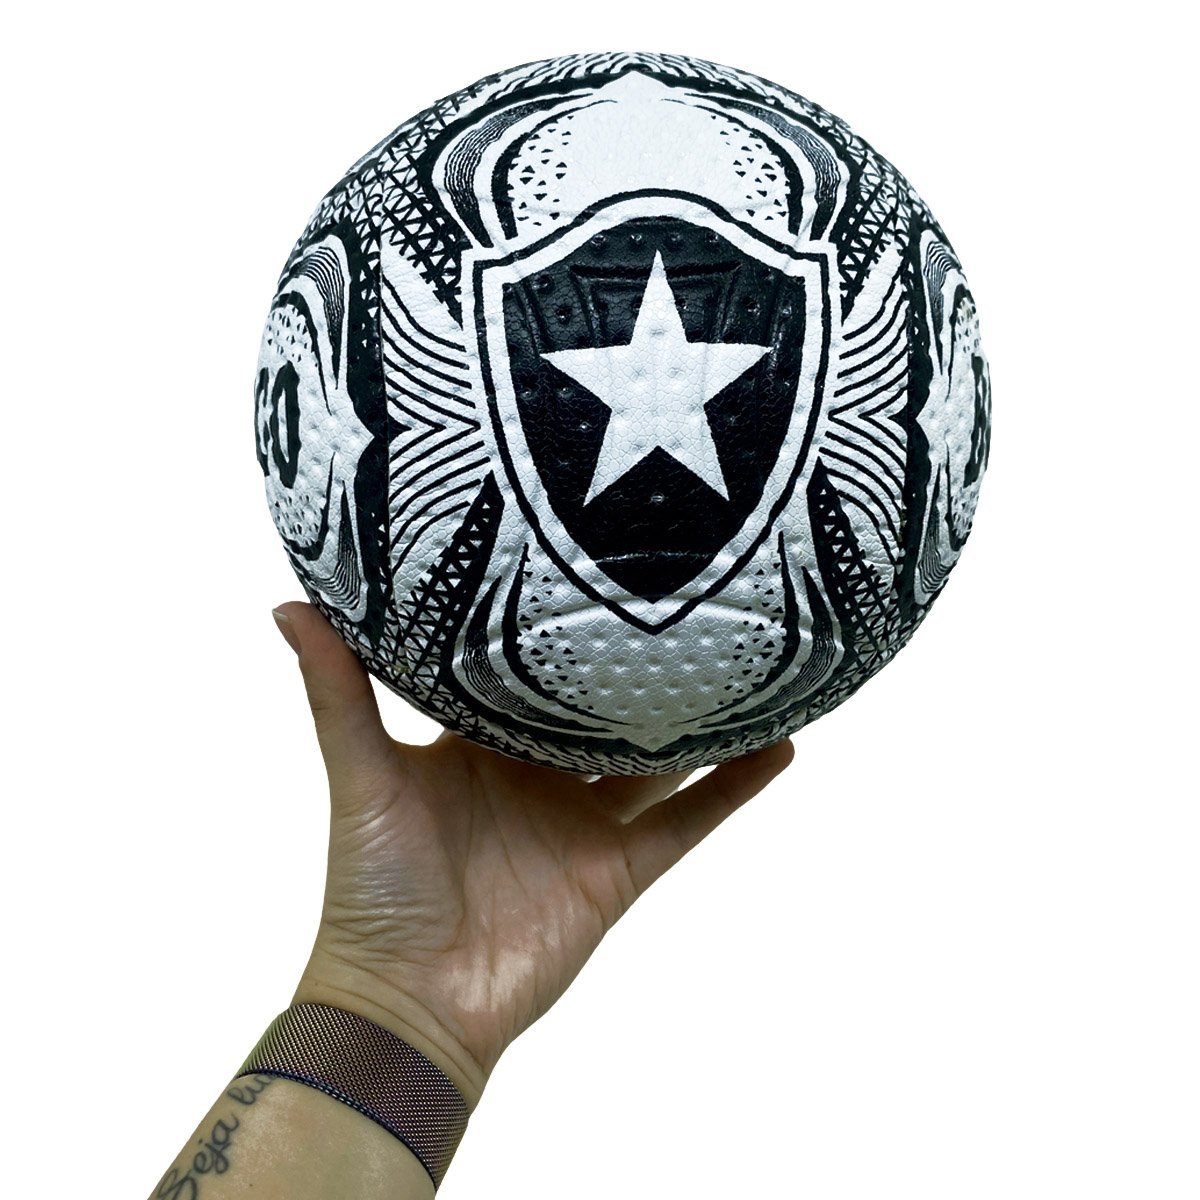 Bola Futebol Branca Santos (sfc) Licenciada Oficial - Jogos